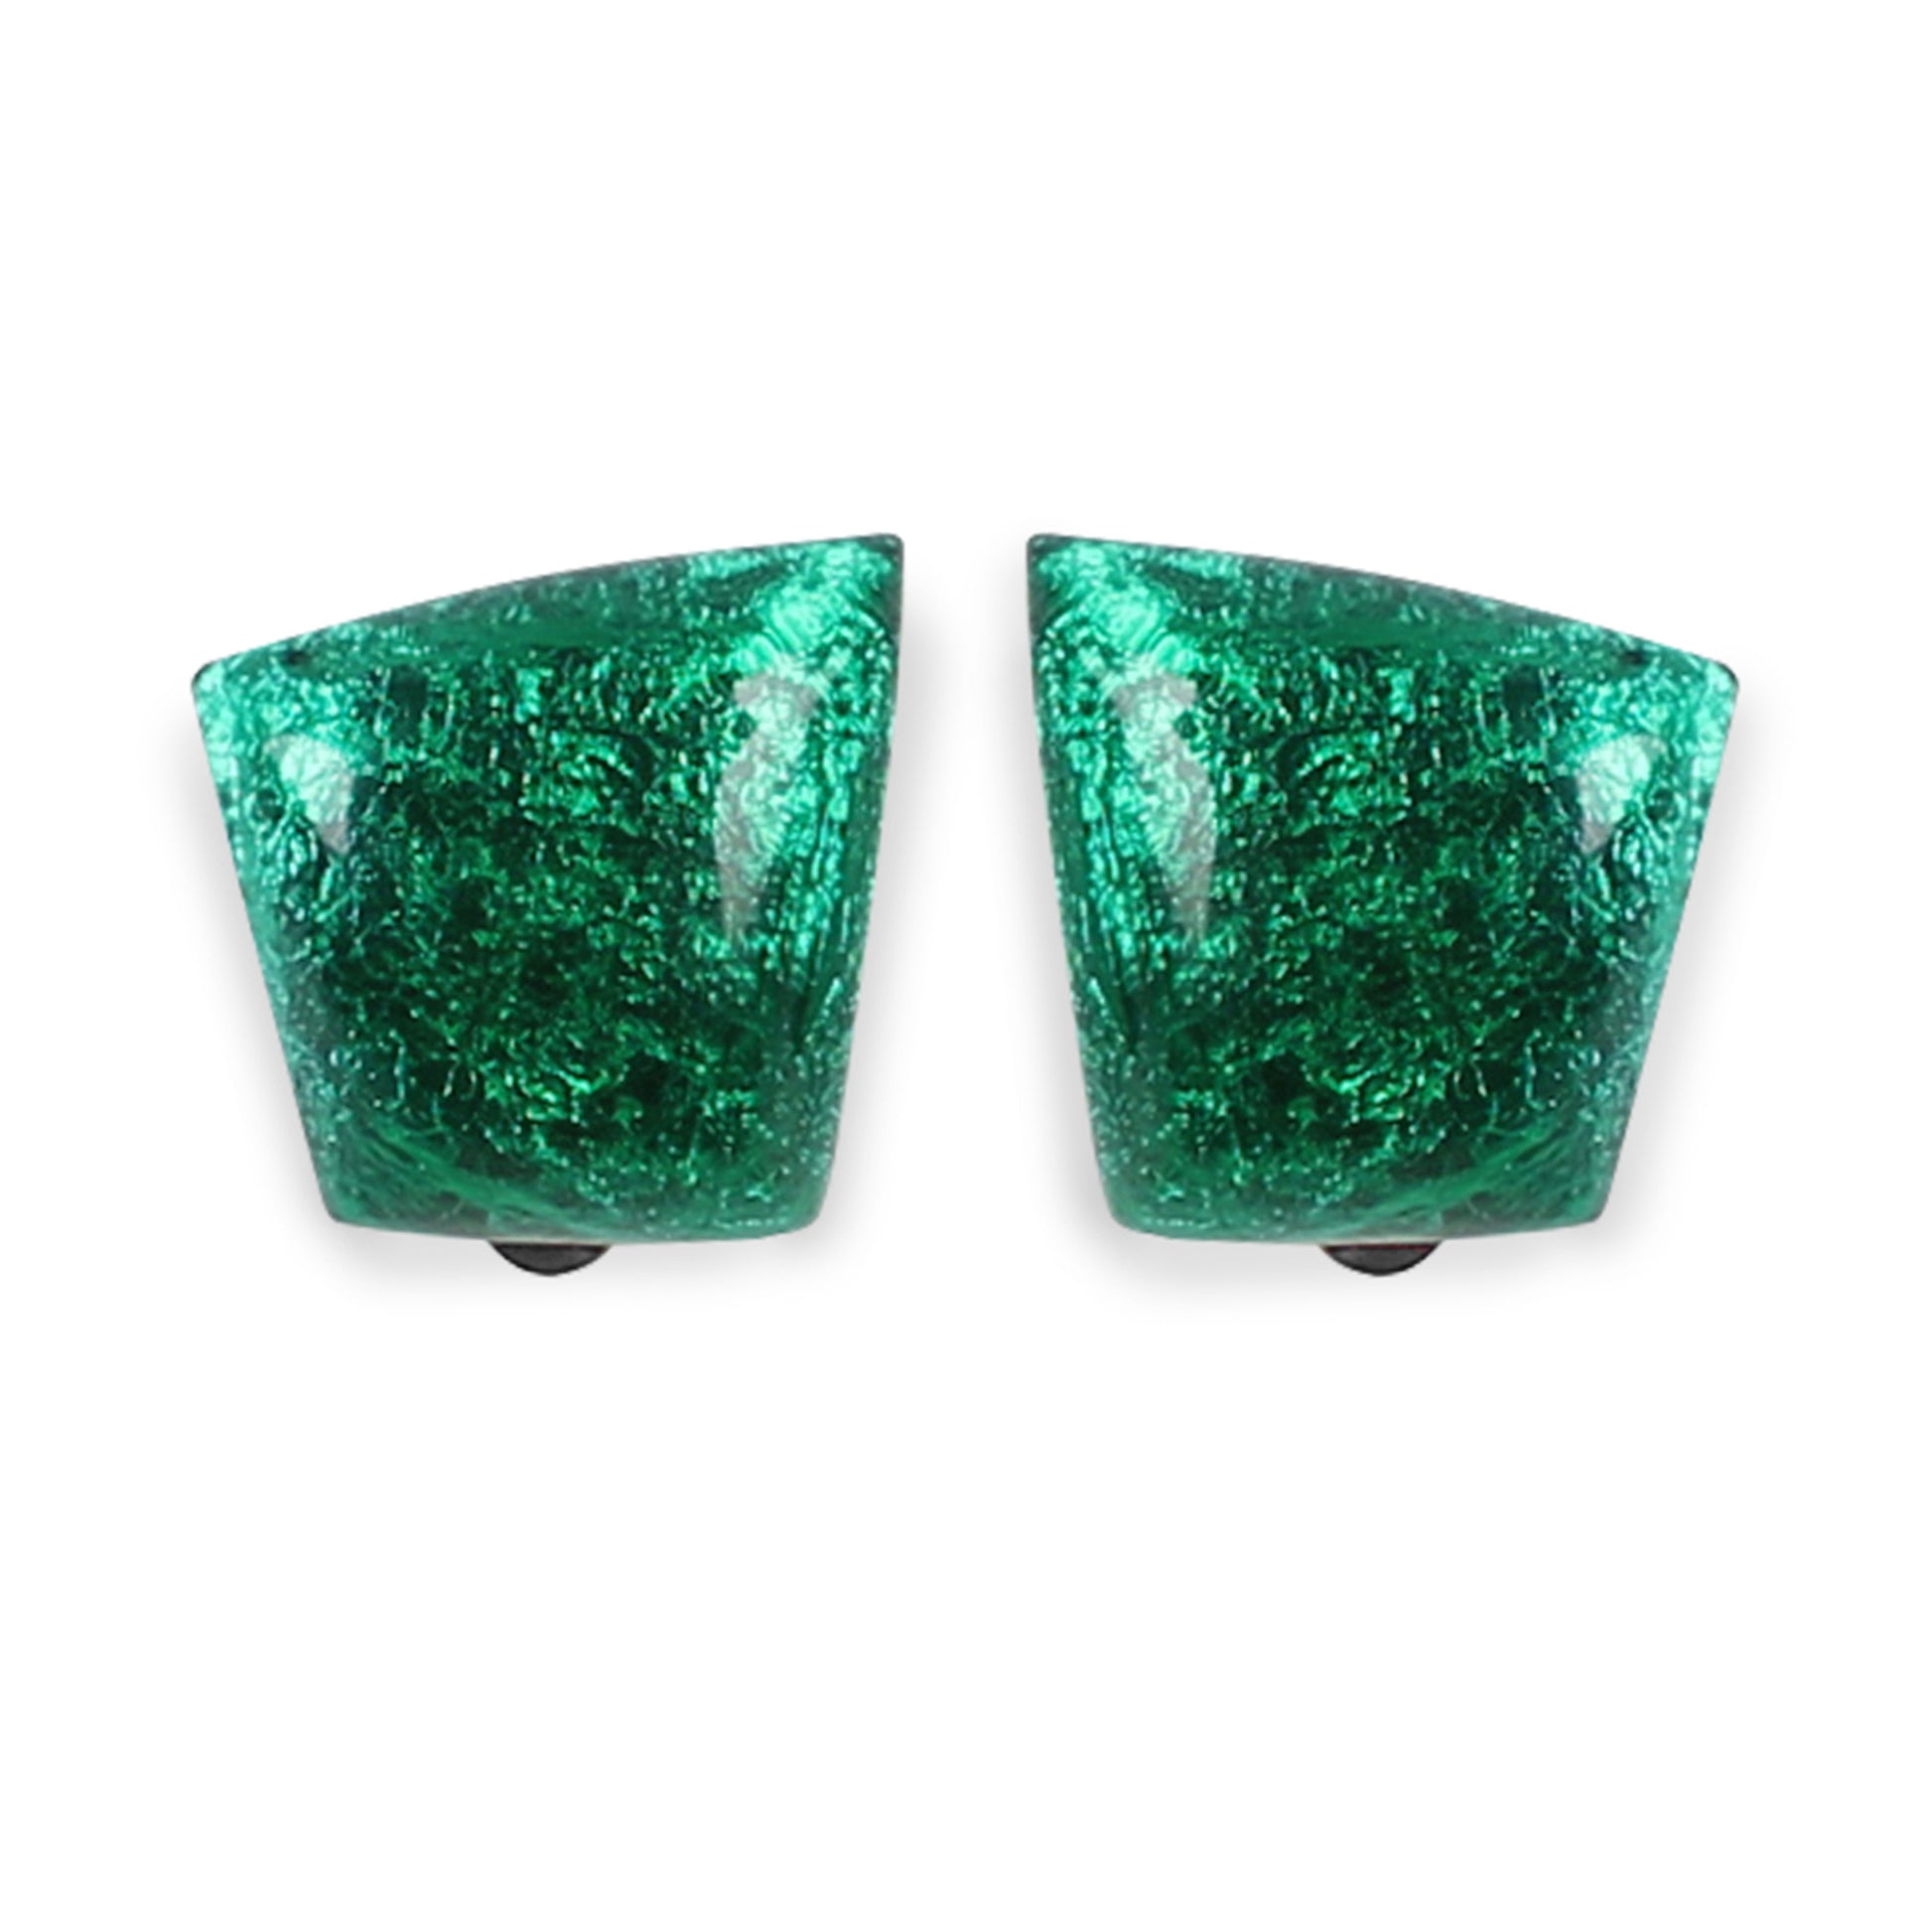 Emerald Cleopatra Shiny Clip Earrings